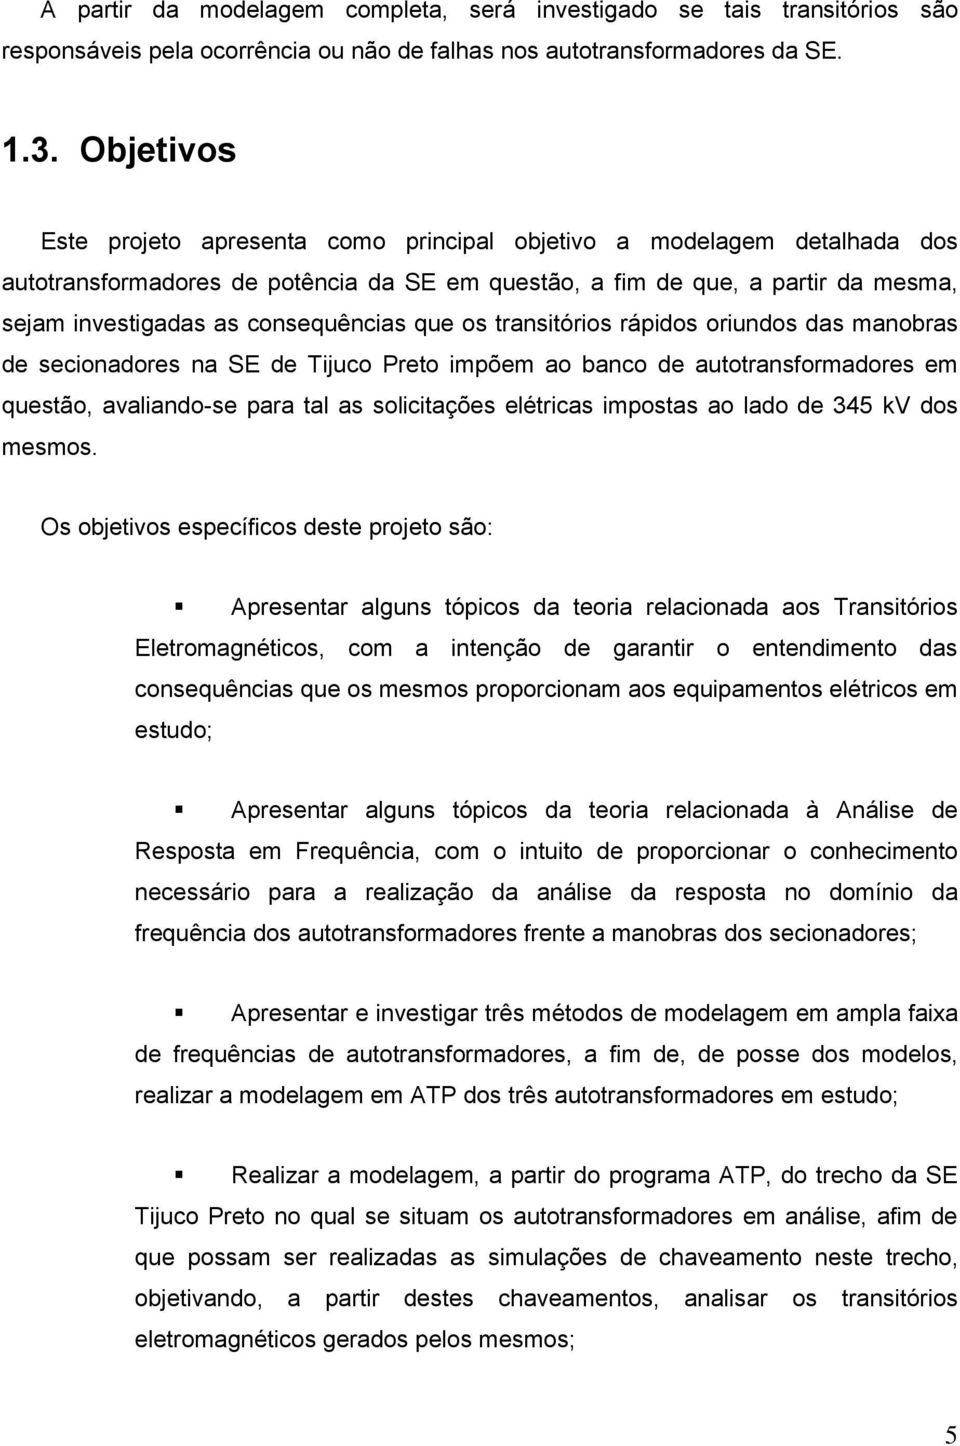 consequências que os transitórios rápidos oriundos das manobras de secionadores na SE de Tijuco Preto impõem ao banco de autotransformadores em questão, avaliando-se para tal as solicitações